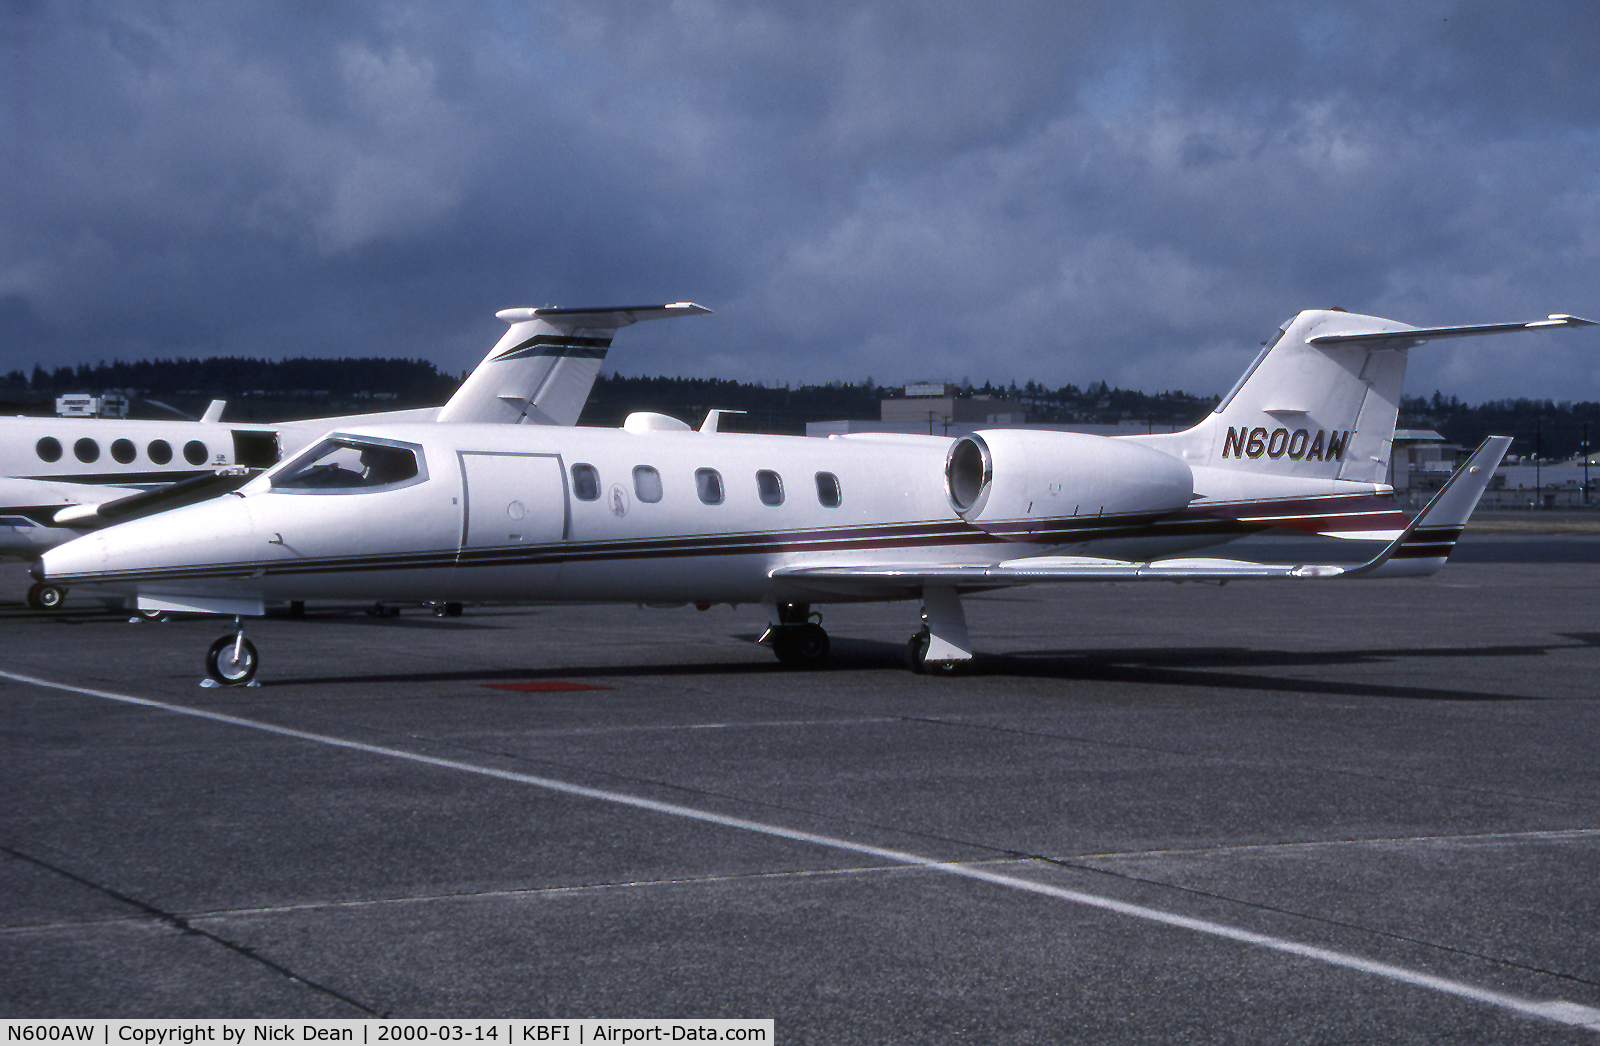 N600AW, 1990 Learjet 31 C/N 31-017, KBFI